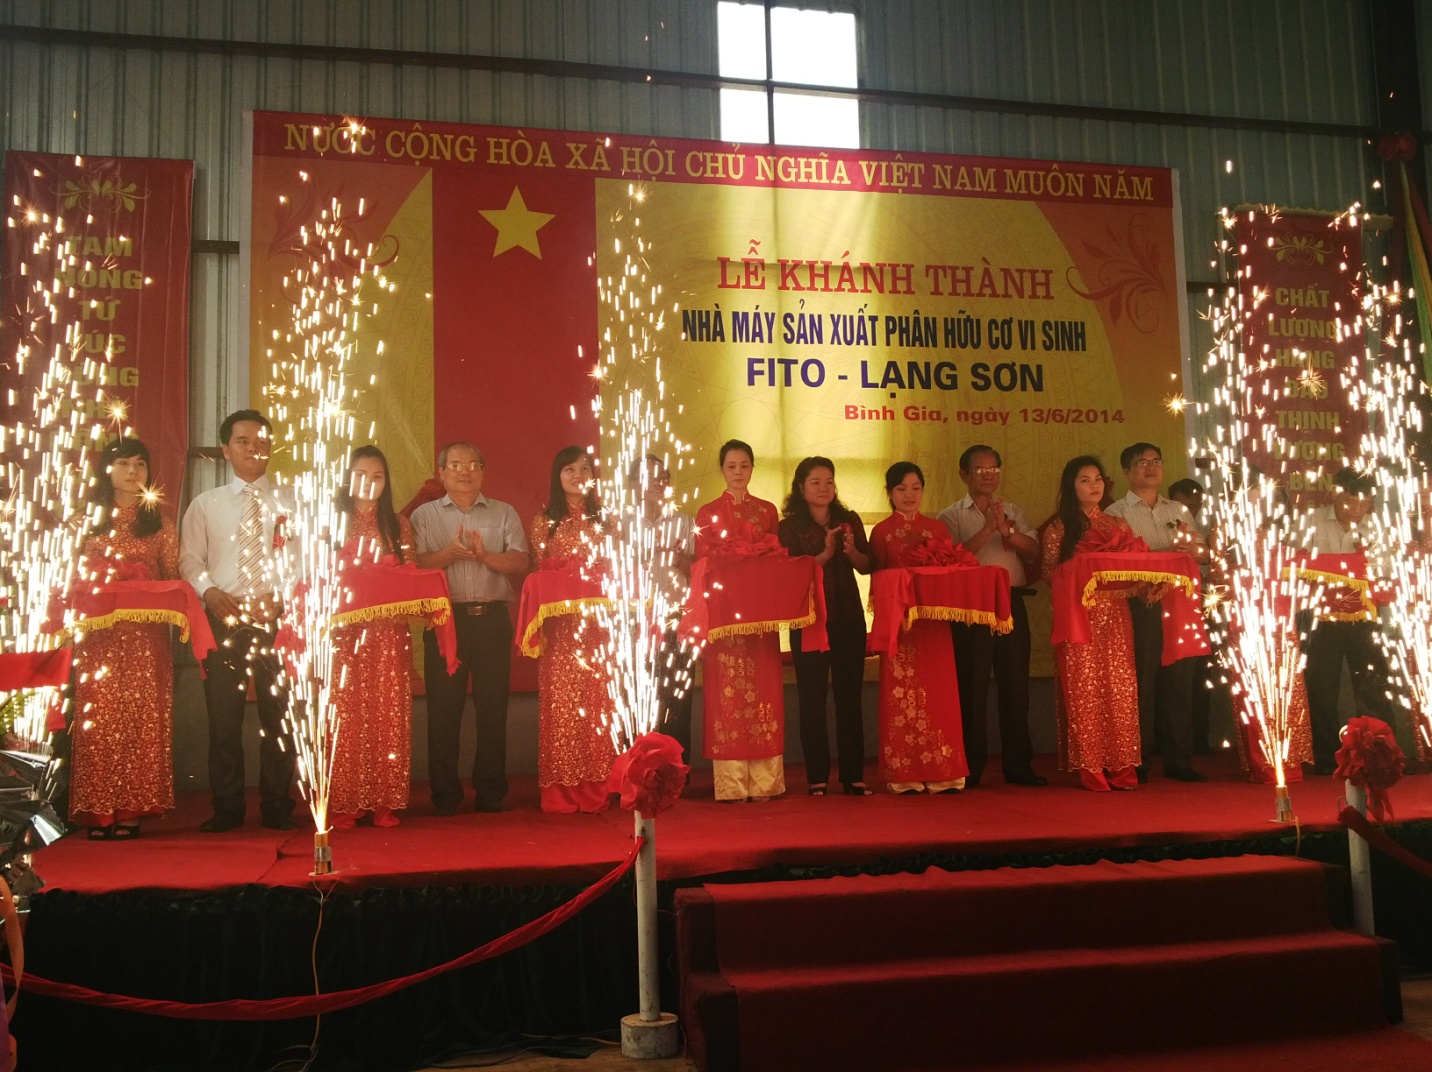 Khánh thành nhà máy sản xuất phân bón hữu cơ vi sinh Fito-Lạng Sơn